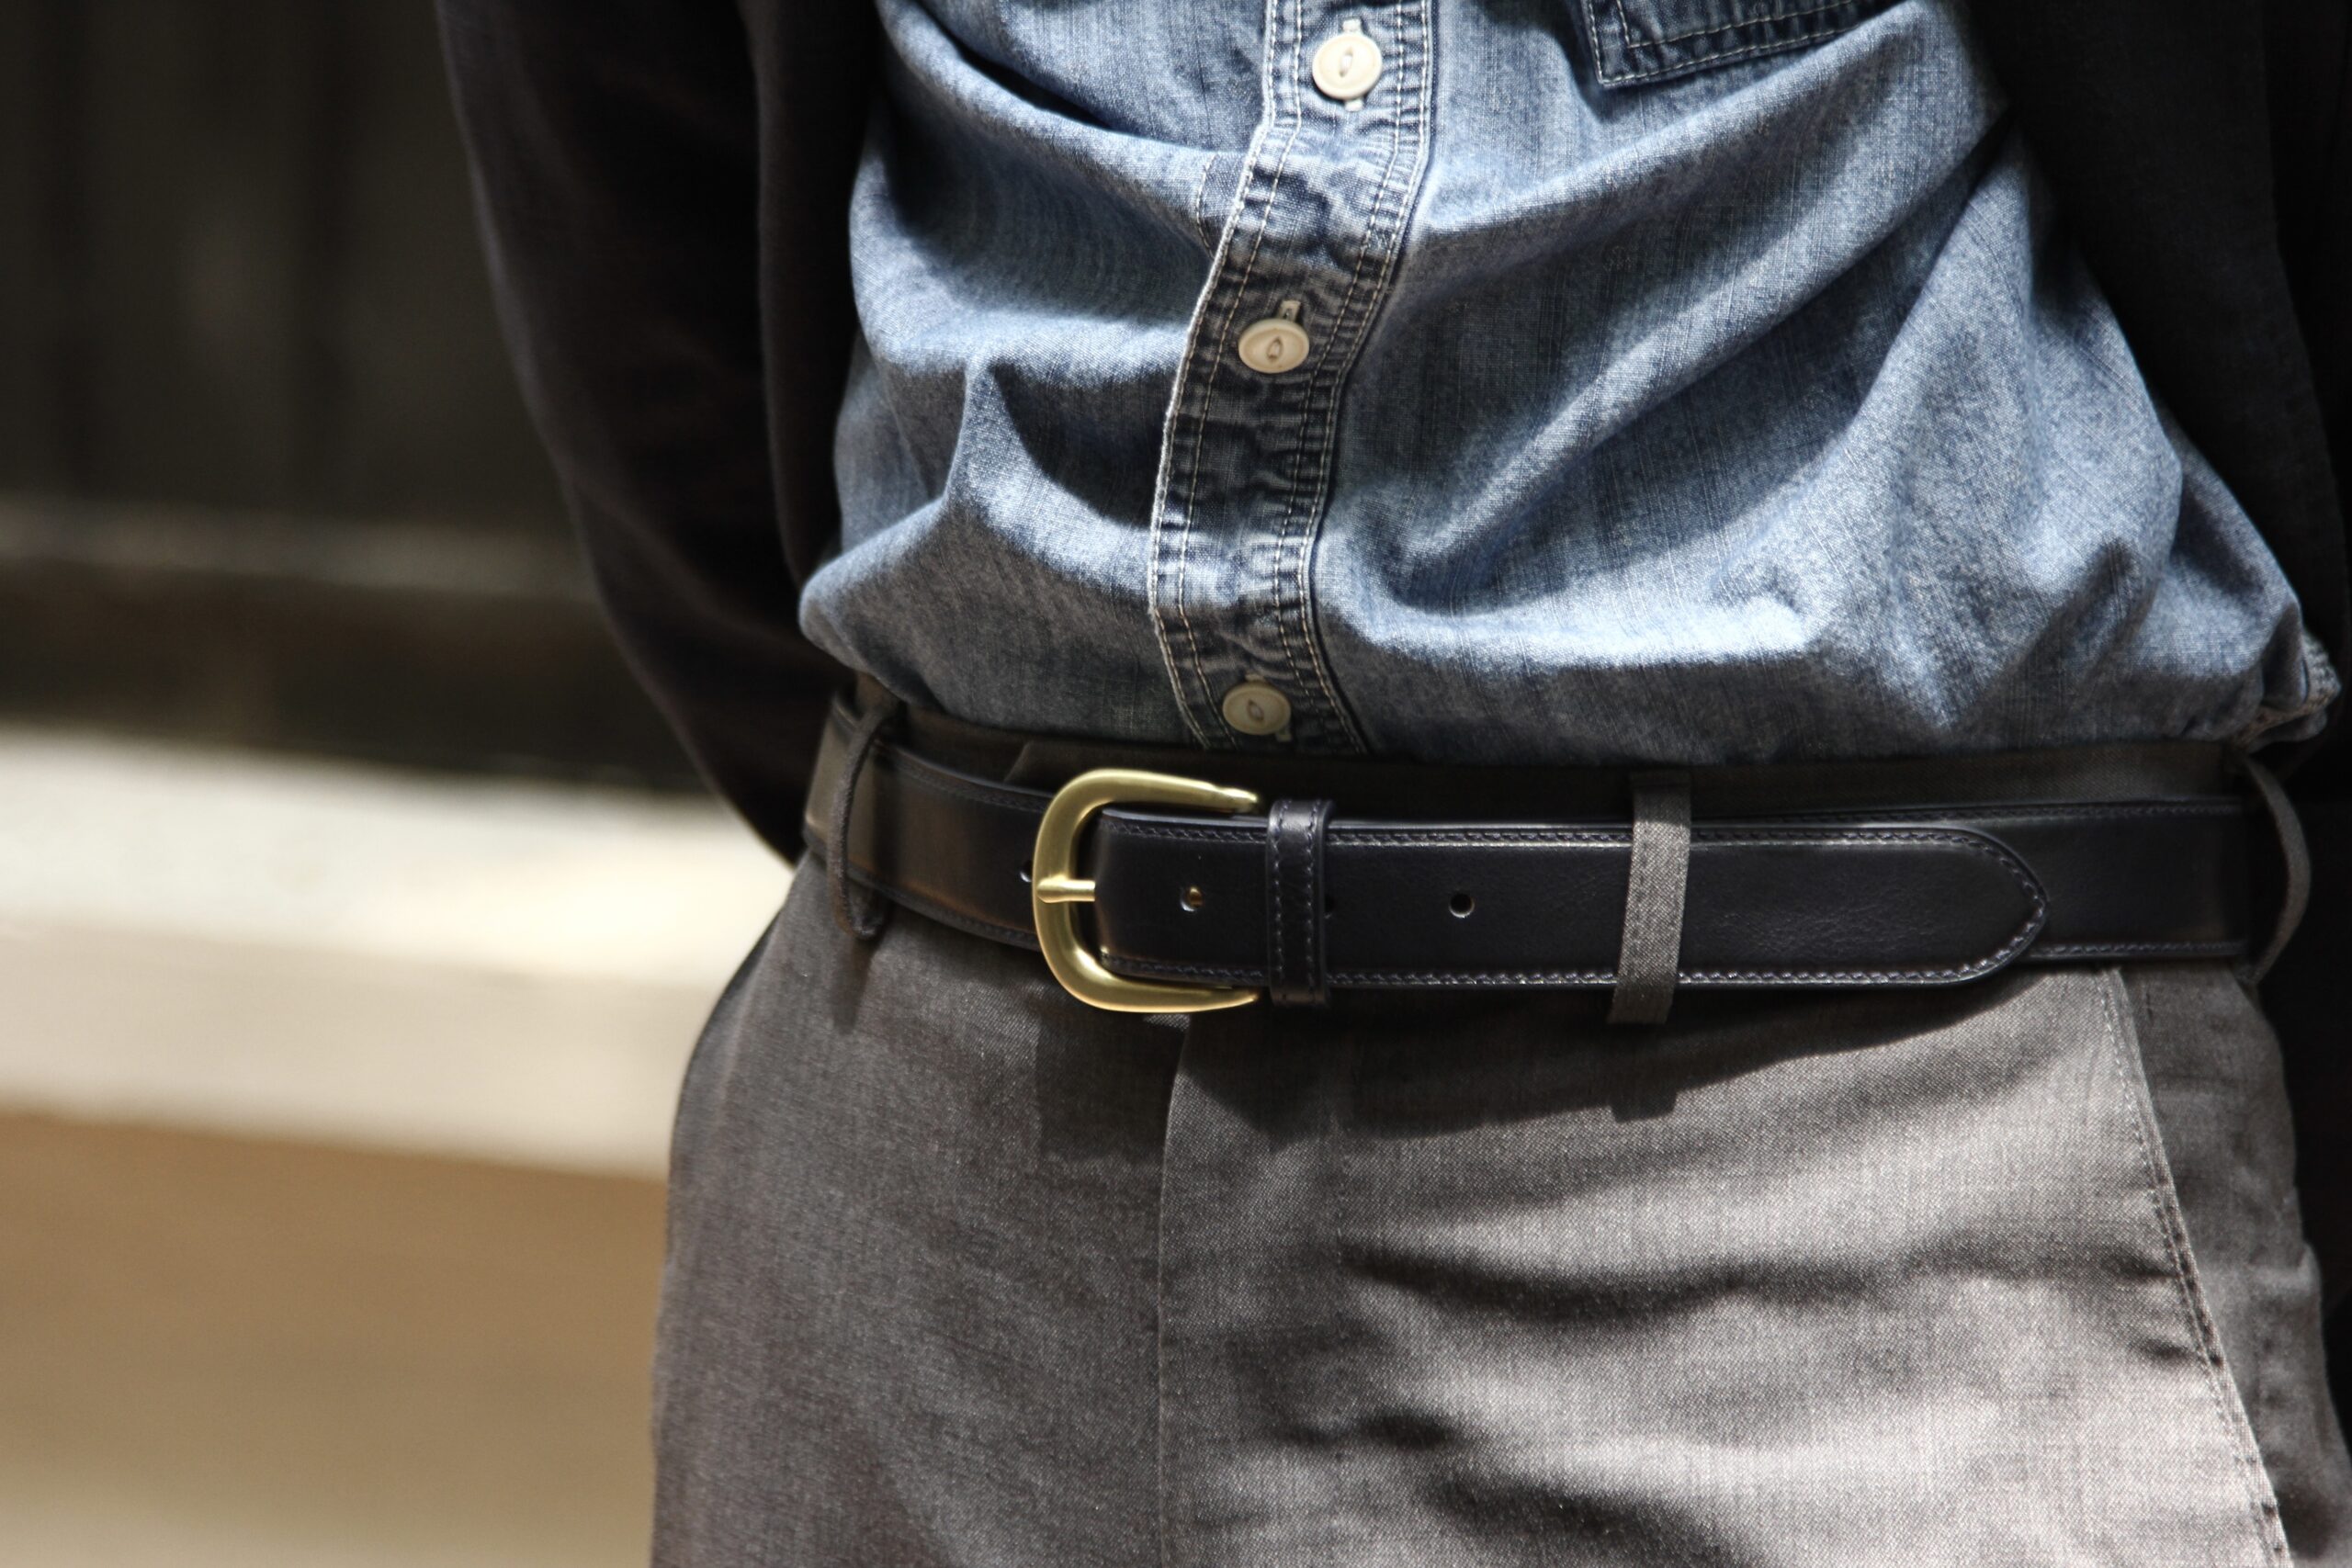 classic-leather-belt